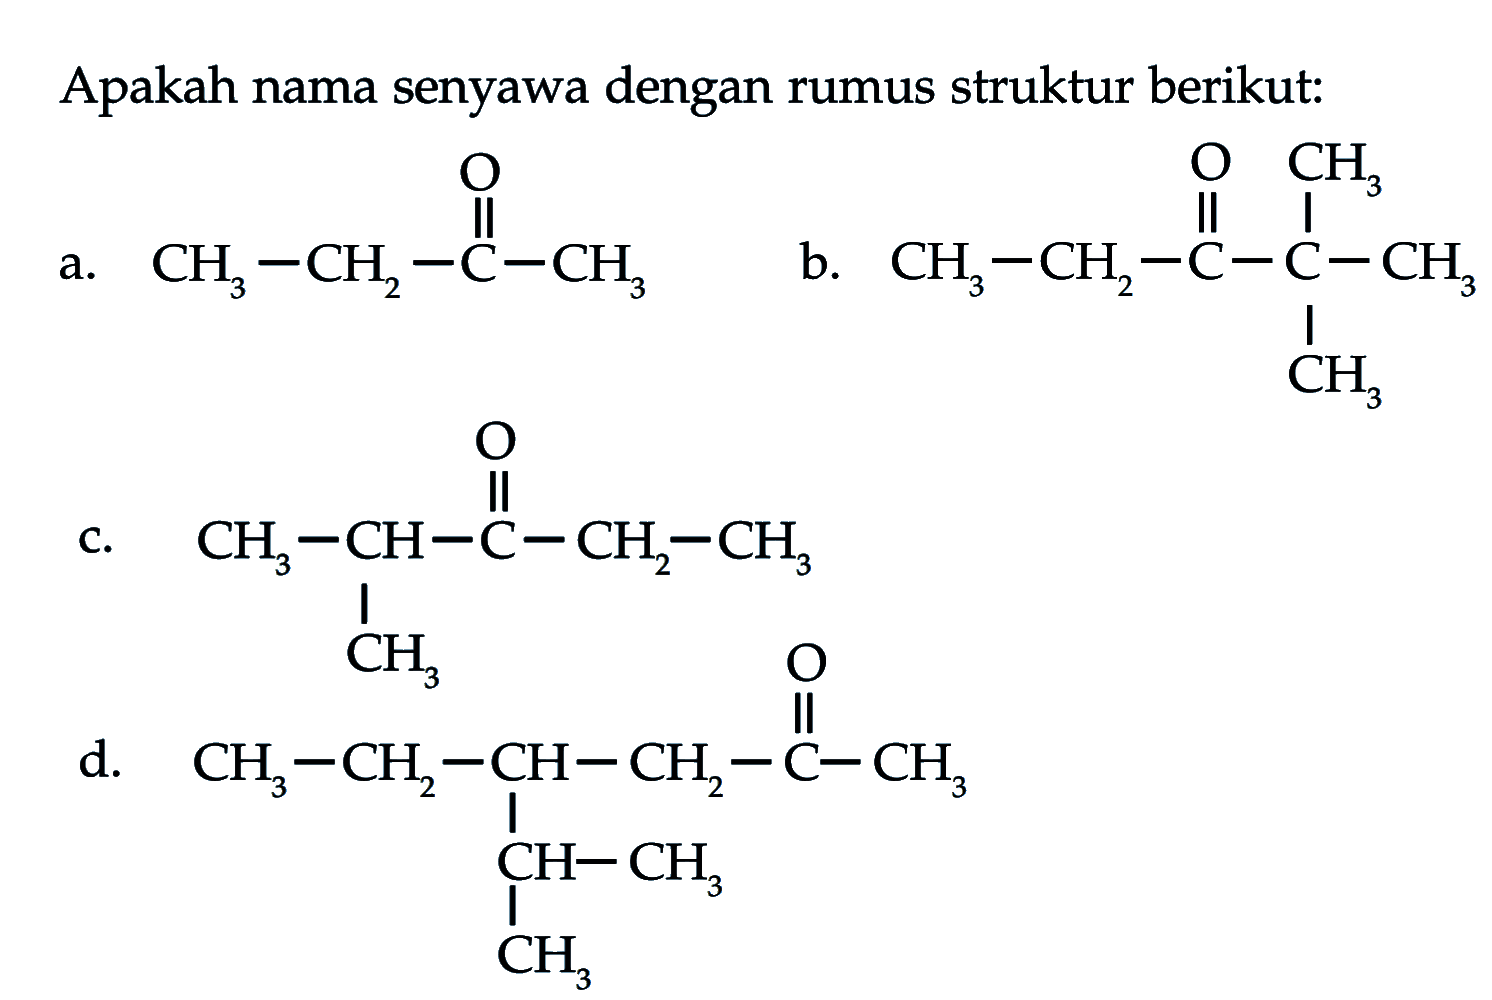 Apakah nama senyawa dengan rumus struktur berikut:a. CH3CH2C(O)CH3 b. CH3CH2C(O)C(CH3)(CH3)CH3 c. CH3CHC(CH3)C(O)CH2CH3d. CH3CH2CH(CHCH3CH3)CH2C(O)CH3